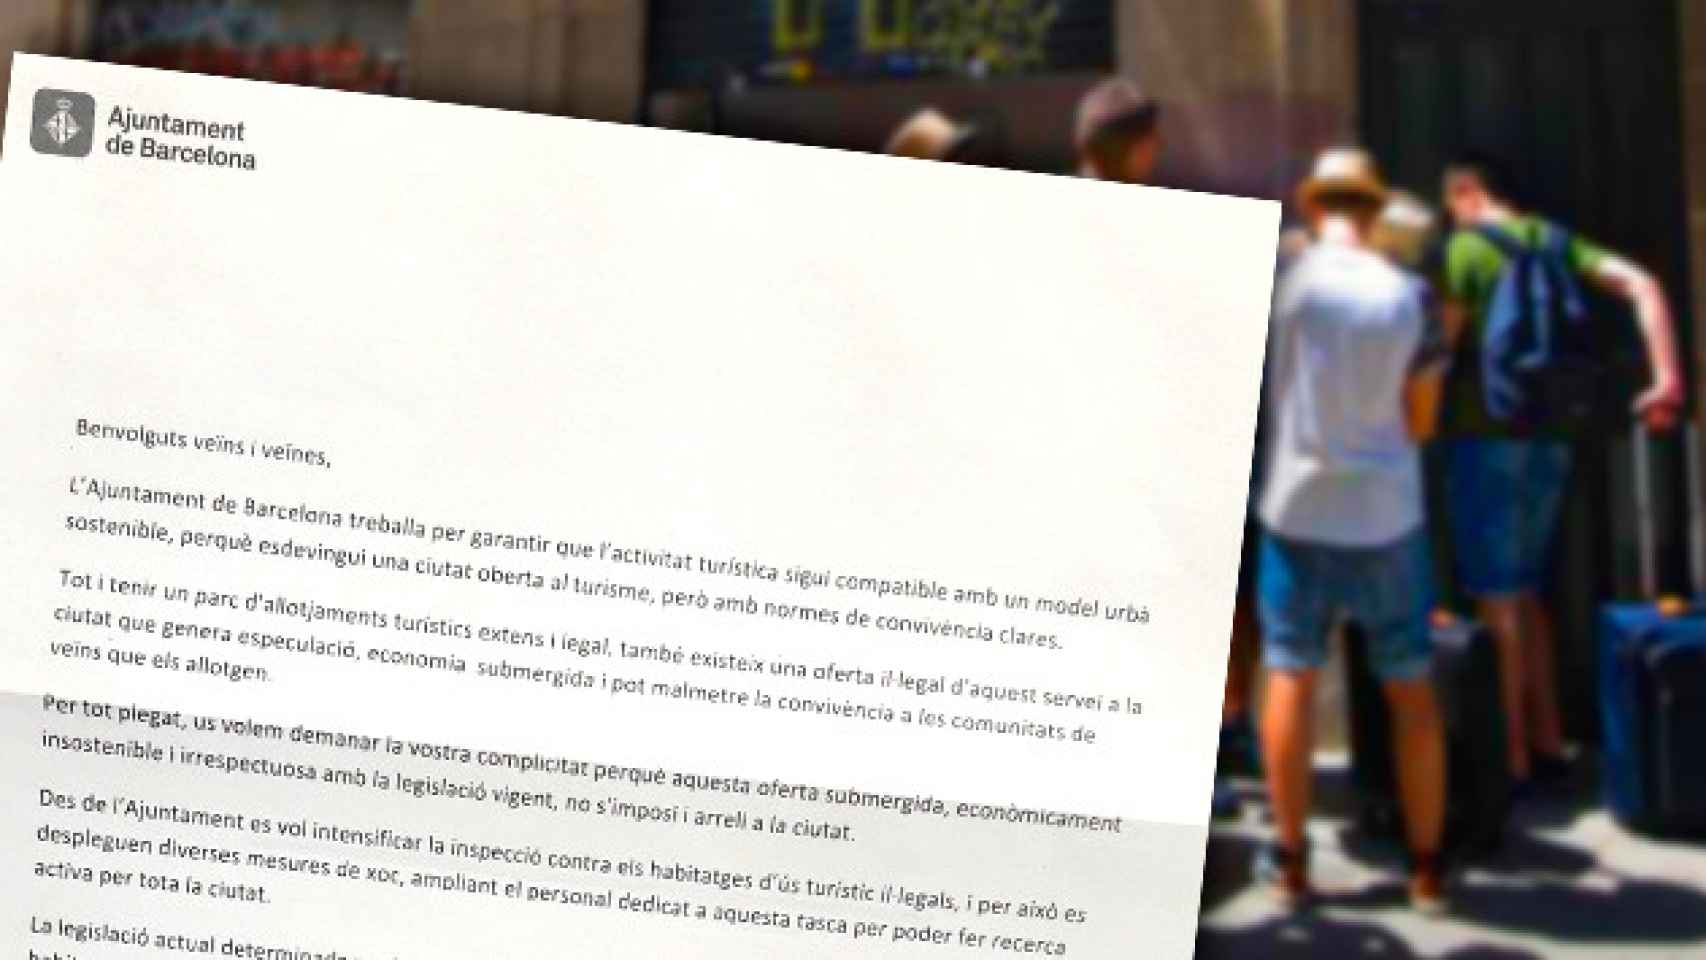 Fragmento de la carta que ha enviado el Ayuntamiento de Barcelona a los vecinos / FOTOMONTAJE CG